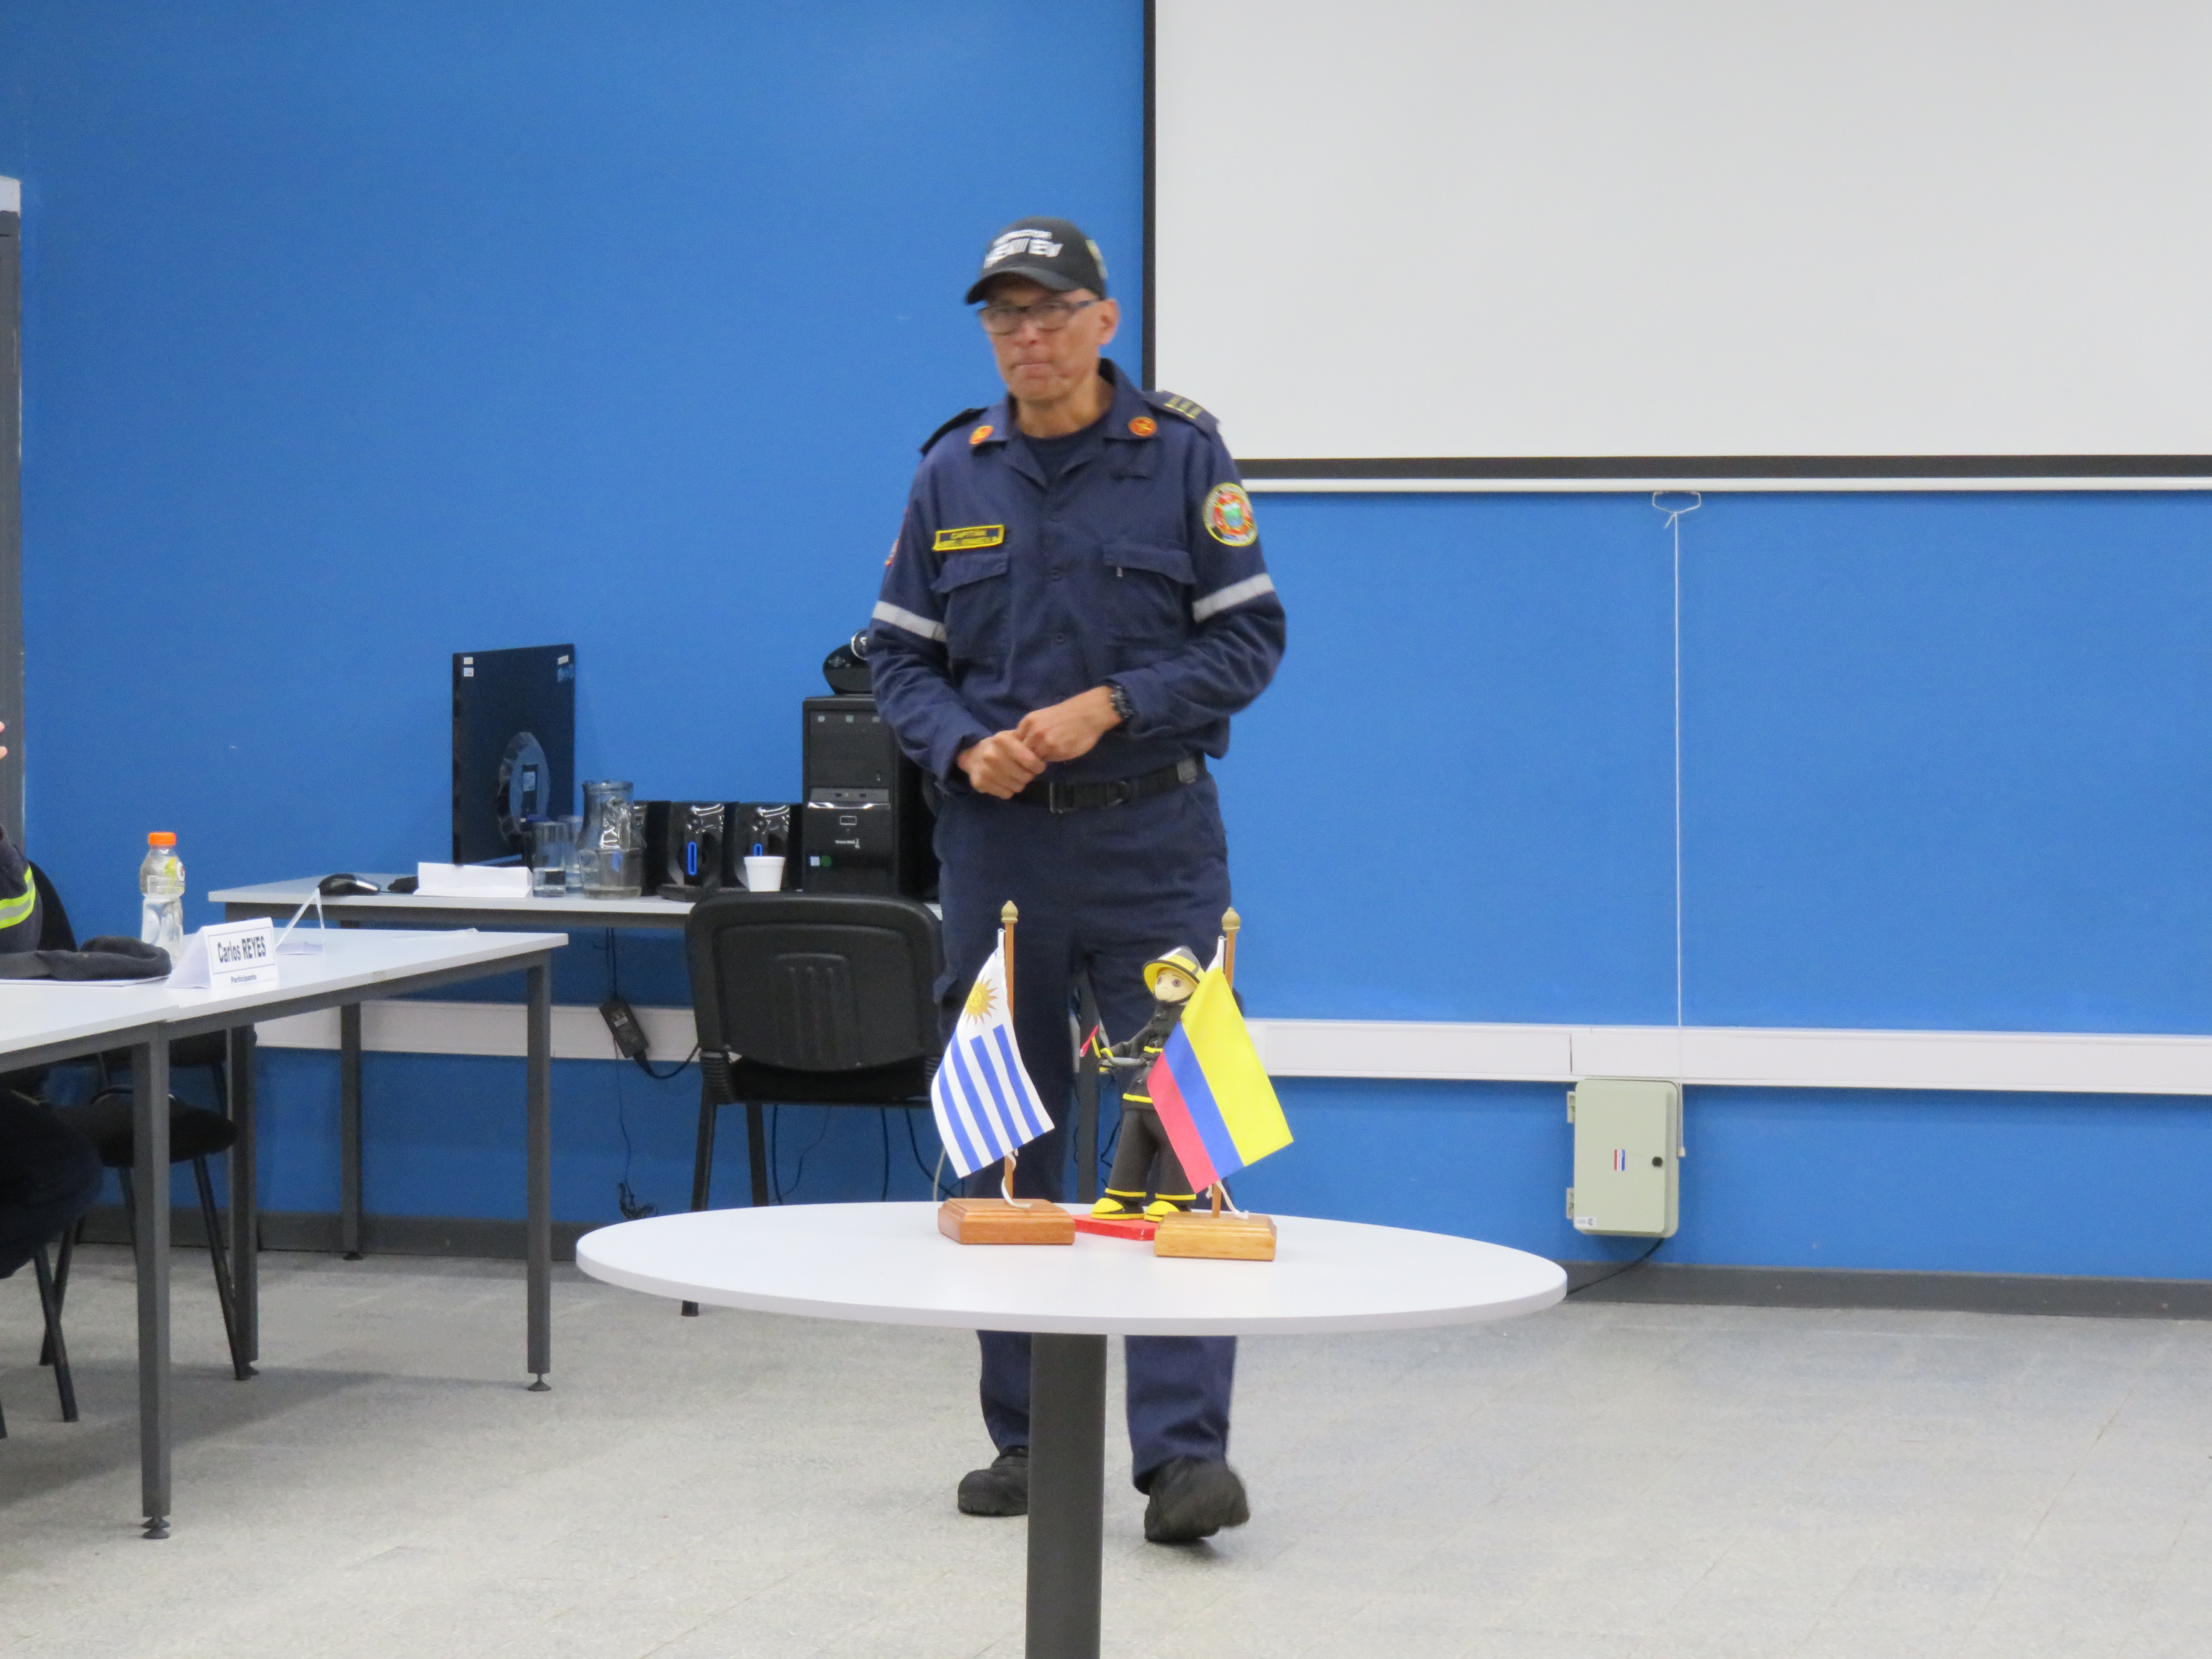 IMG_20230511_3769.jpg - El pasado jueves 11 de mayo culminó la &#034;Capacitación para bomberos sobre manejo de incidentes relacionados con la movilidad eléctrica&#034; en donde se capacitaron a 25 bomberos en la Base Aérea de Santa Bernardina del departamento de Durazno. Esta capacitación es la continuación del primer curso regional que organizó la plataforma MOVE del Programa de la Naciones Unidas para el Medio Ambiente a finales de 2022 en Paraguay, donde participaron y se formaron dos bomberos instructores de Uruguay.